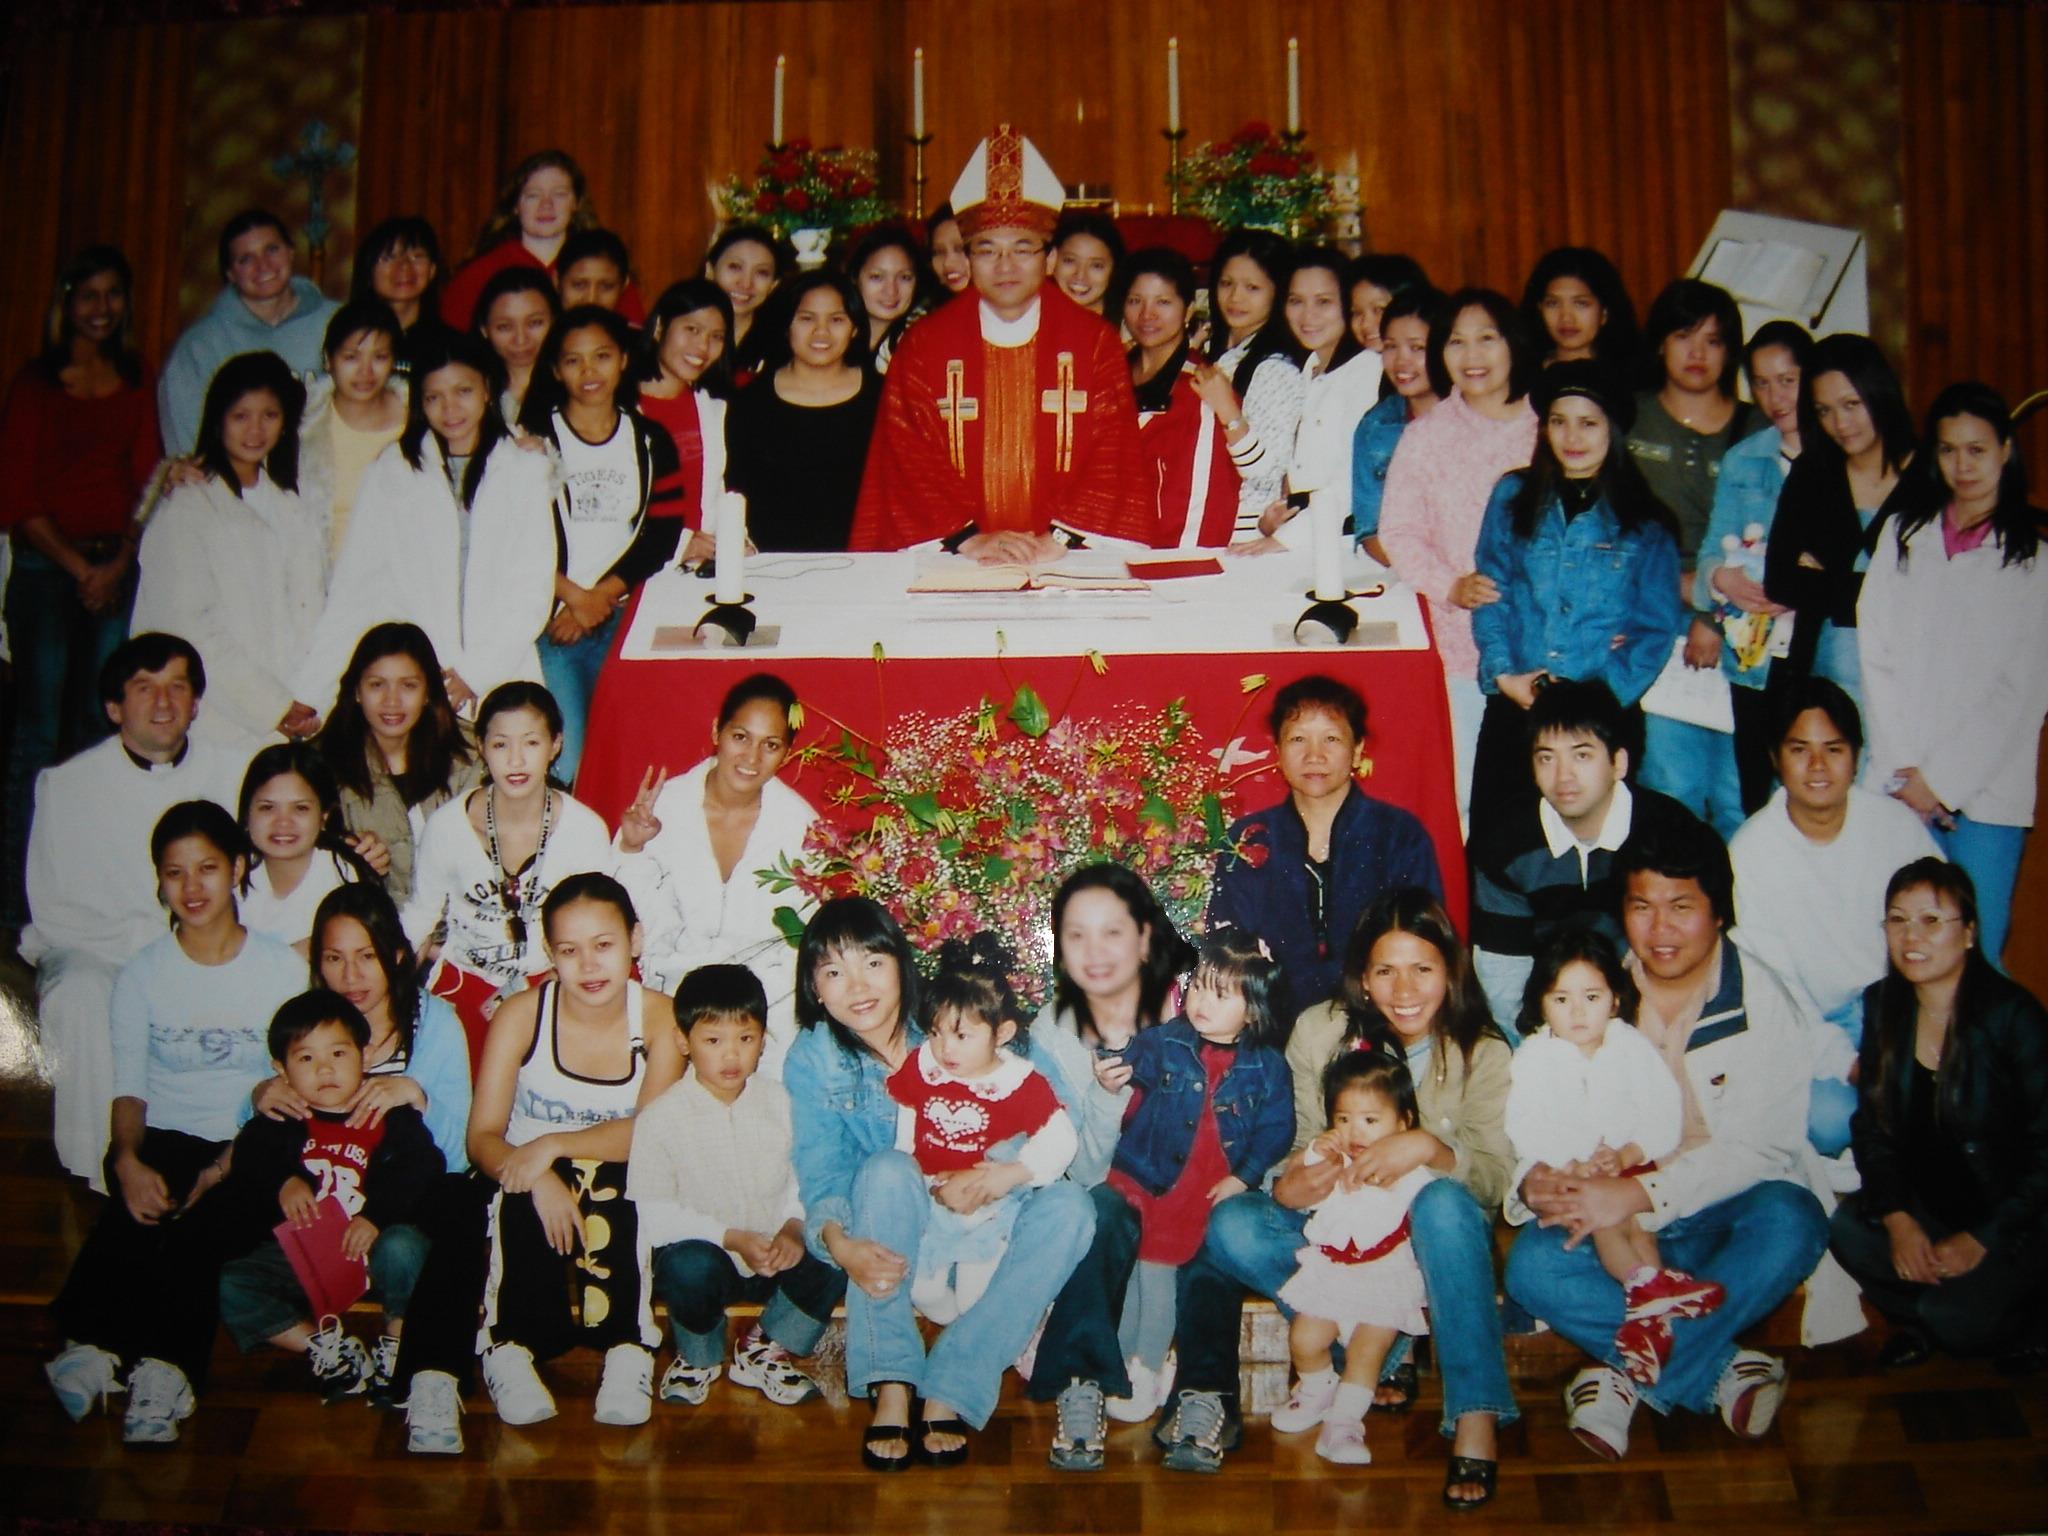 Bishop Kikuchi visiting Yamagata - May 15, 2005